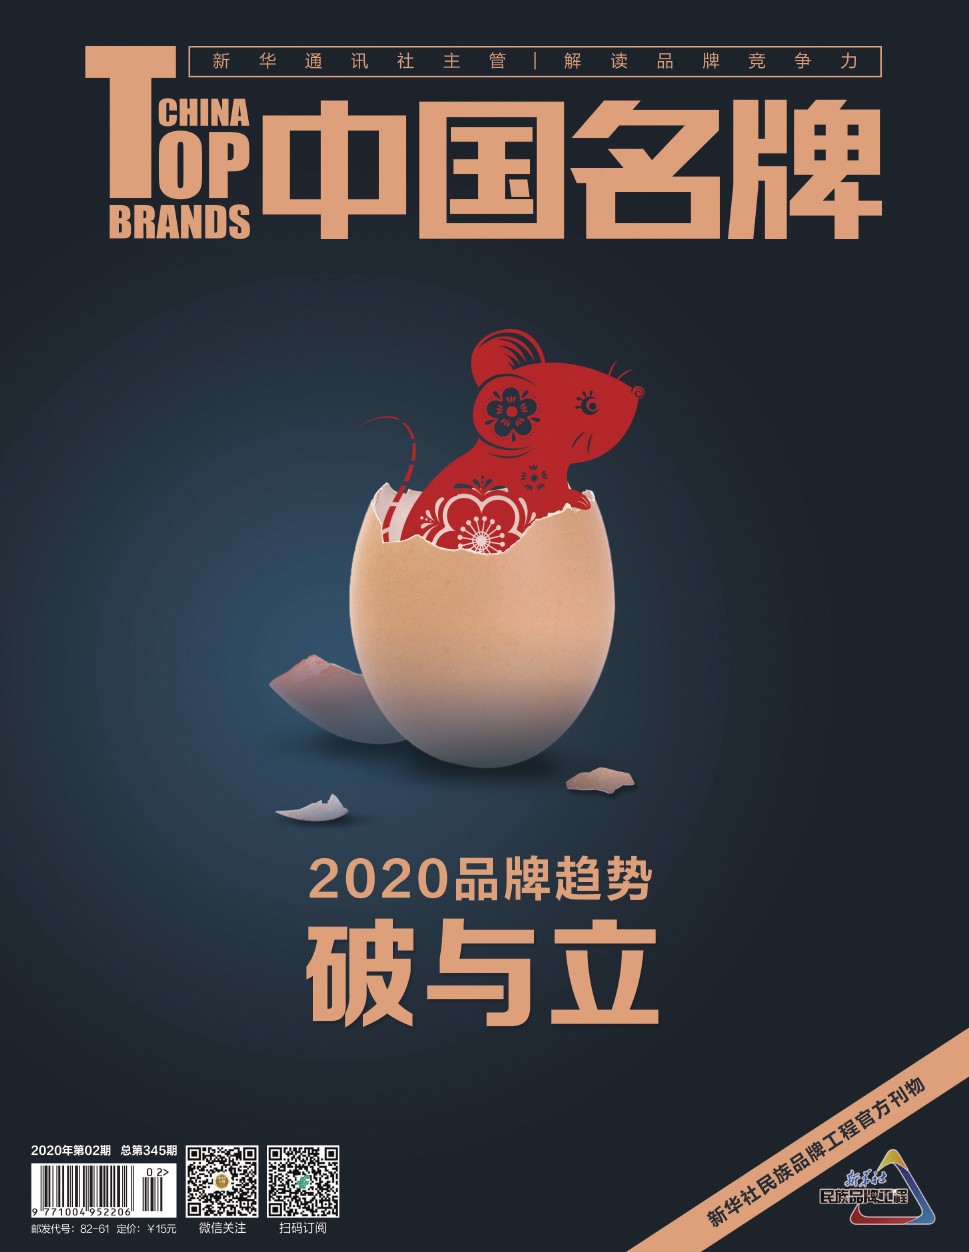 《中国名牌》电子杂志2020年第2期